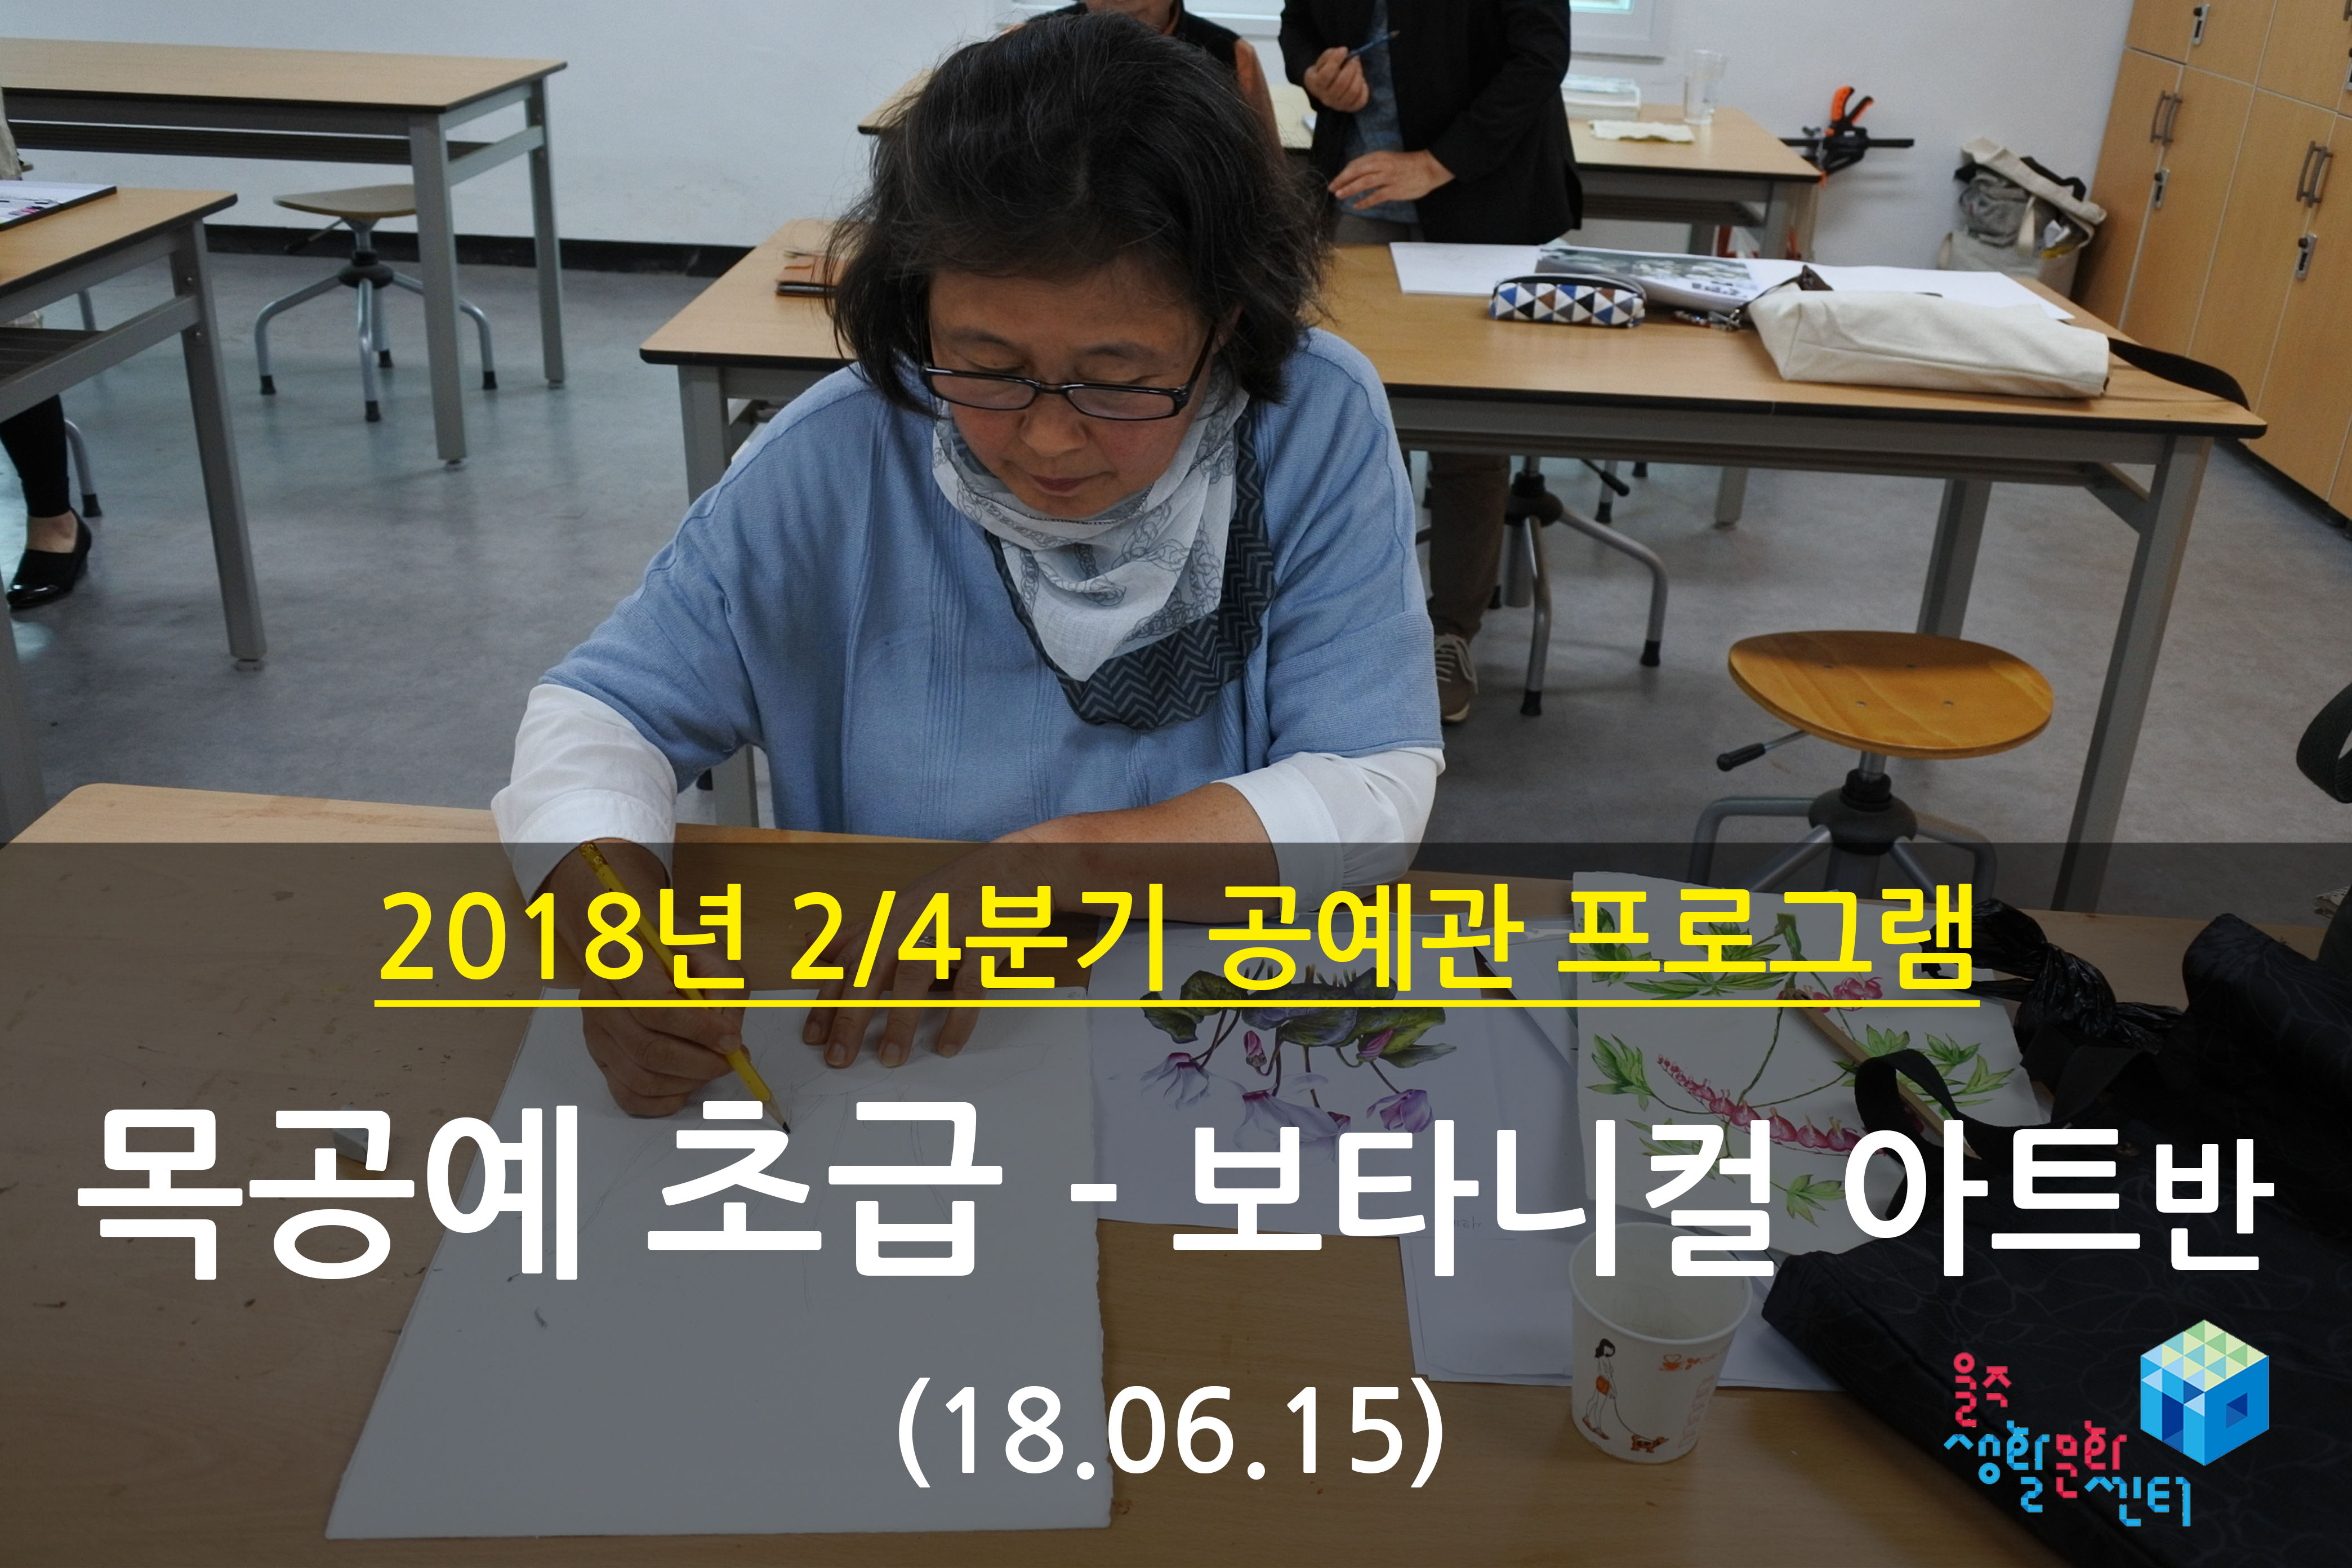 2018.06.15 _ 목공예 초급 - 보타니컬 아트반 _ 2/4분기 11주차 수업